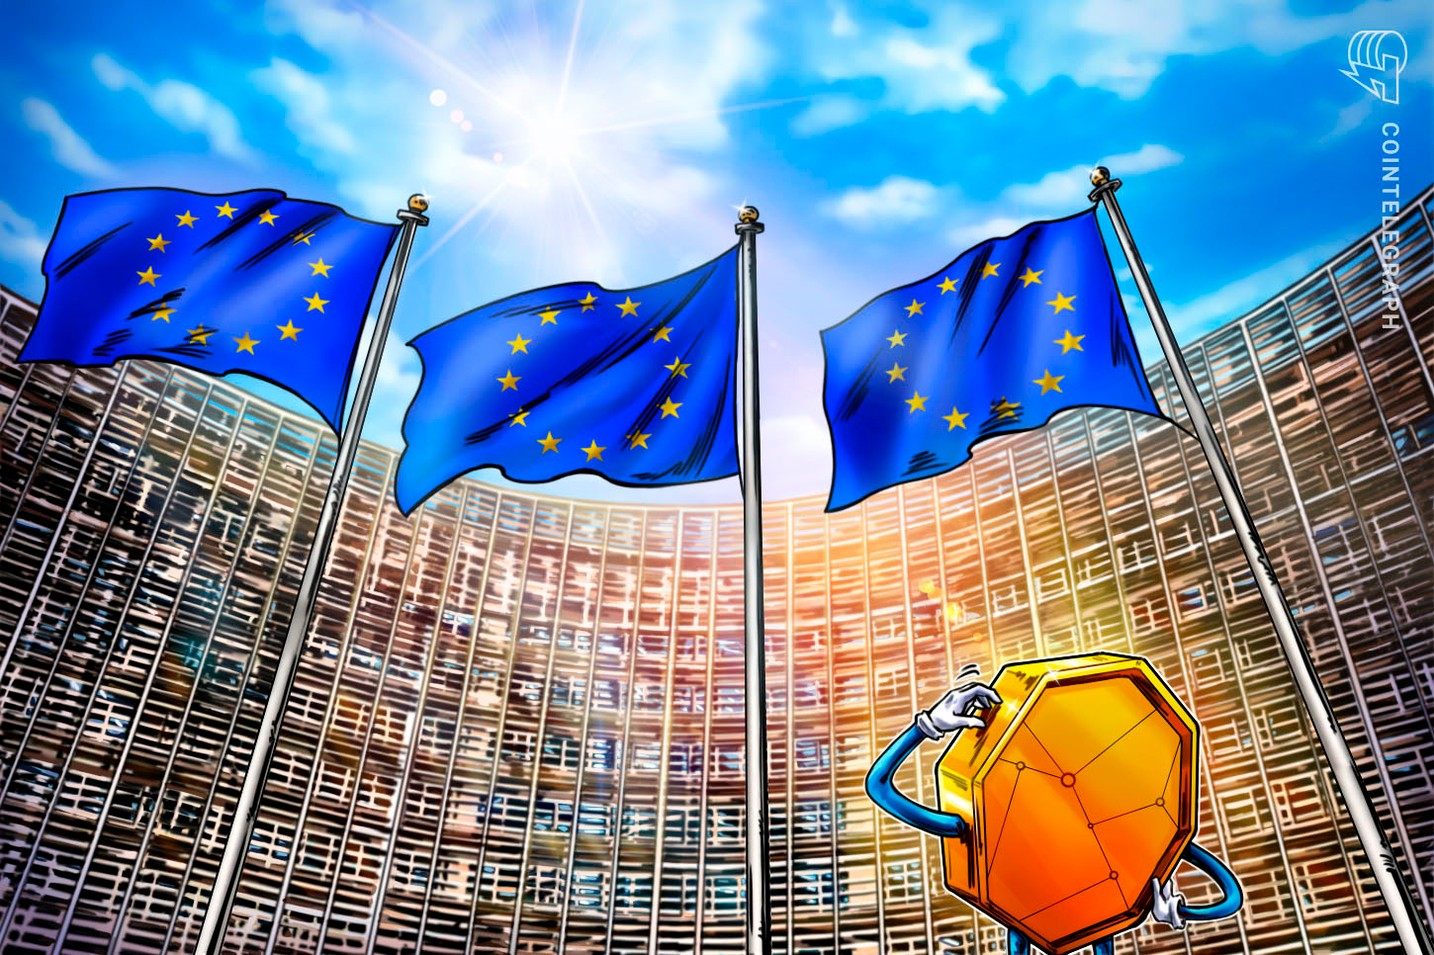  欧州議会、スマートコントラクトに変更可能にすることを義務付けるデータ法を承認 